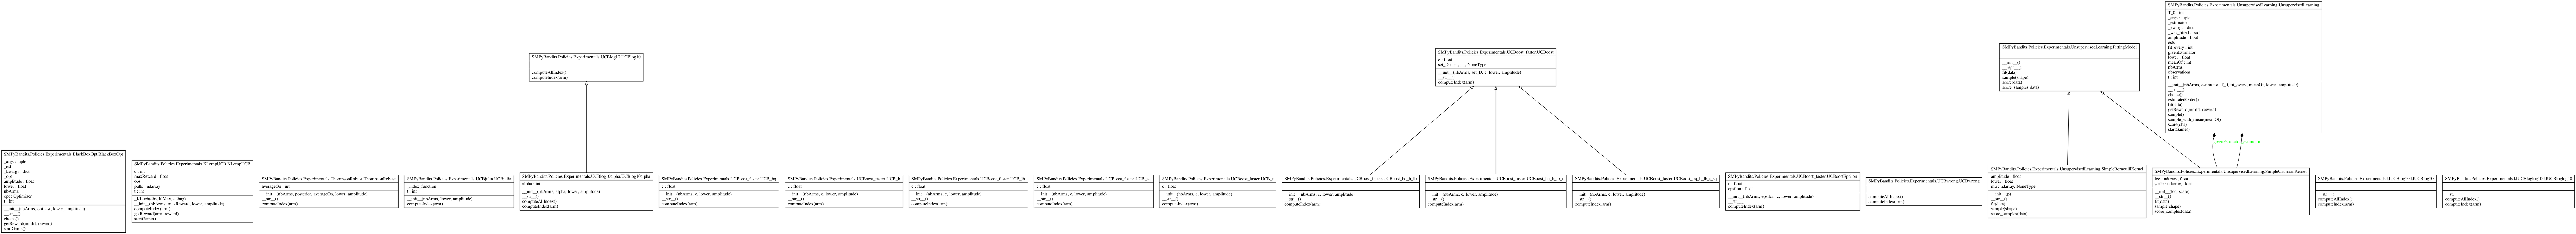 UML Diagram - classe SMPyBandits.Policies.Experimentals.png